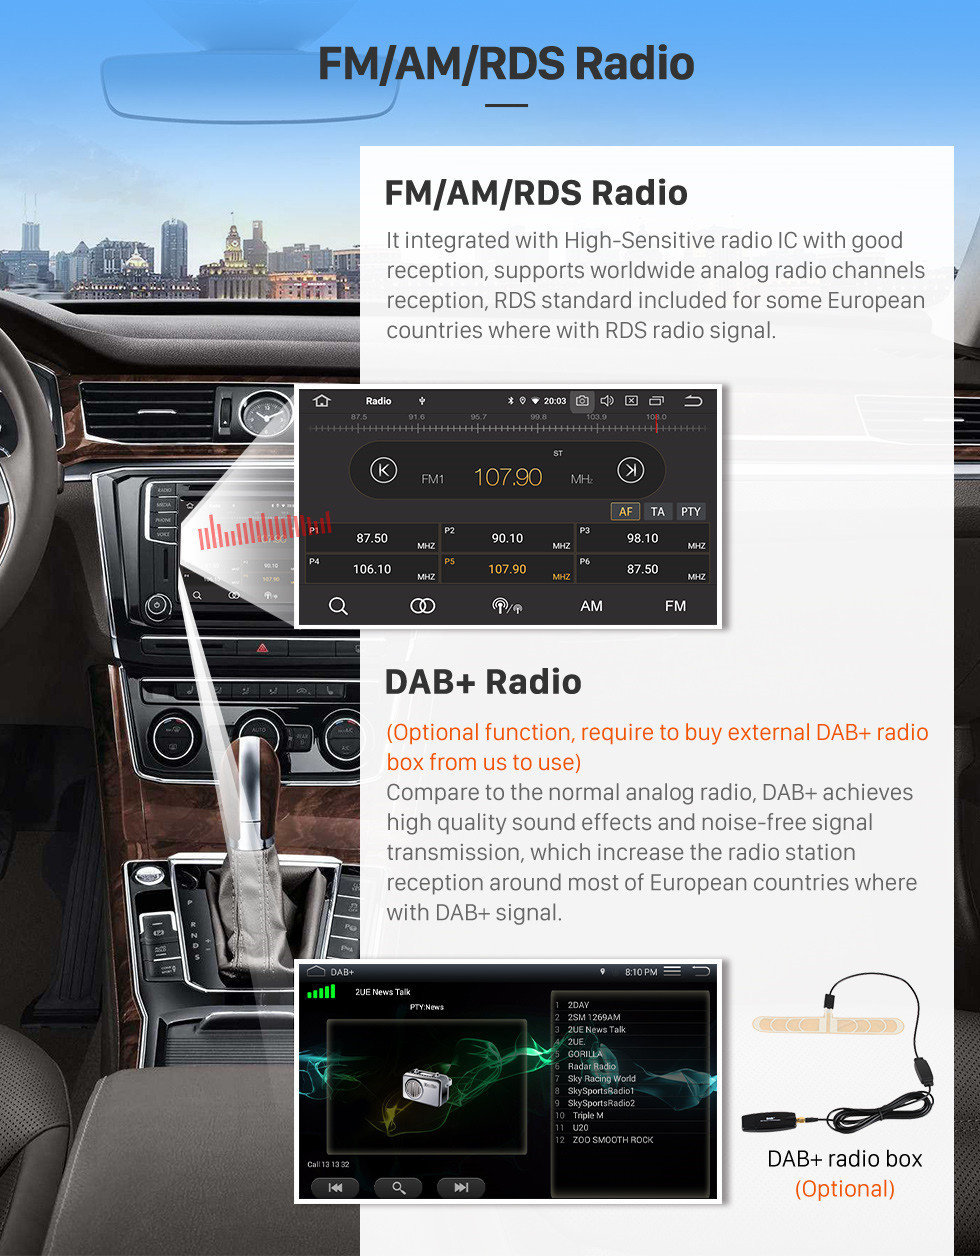 Seicane OEM 9 pouces Android 11.0 Radio pour 2012-2016 Kia K3 RHD Bluetooth HD à écran tactile GPS Navigation Carplay support caméra arrière